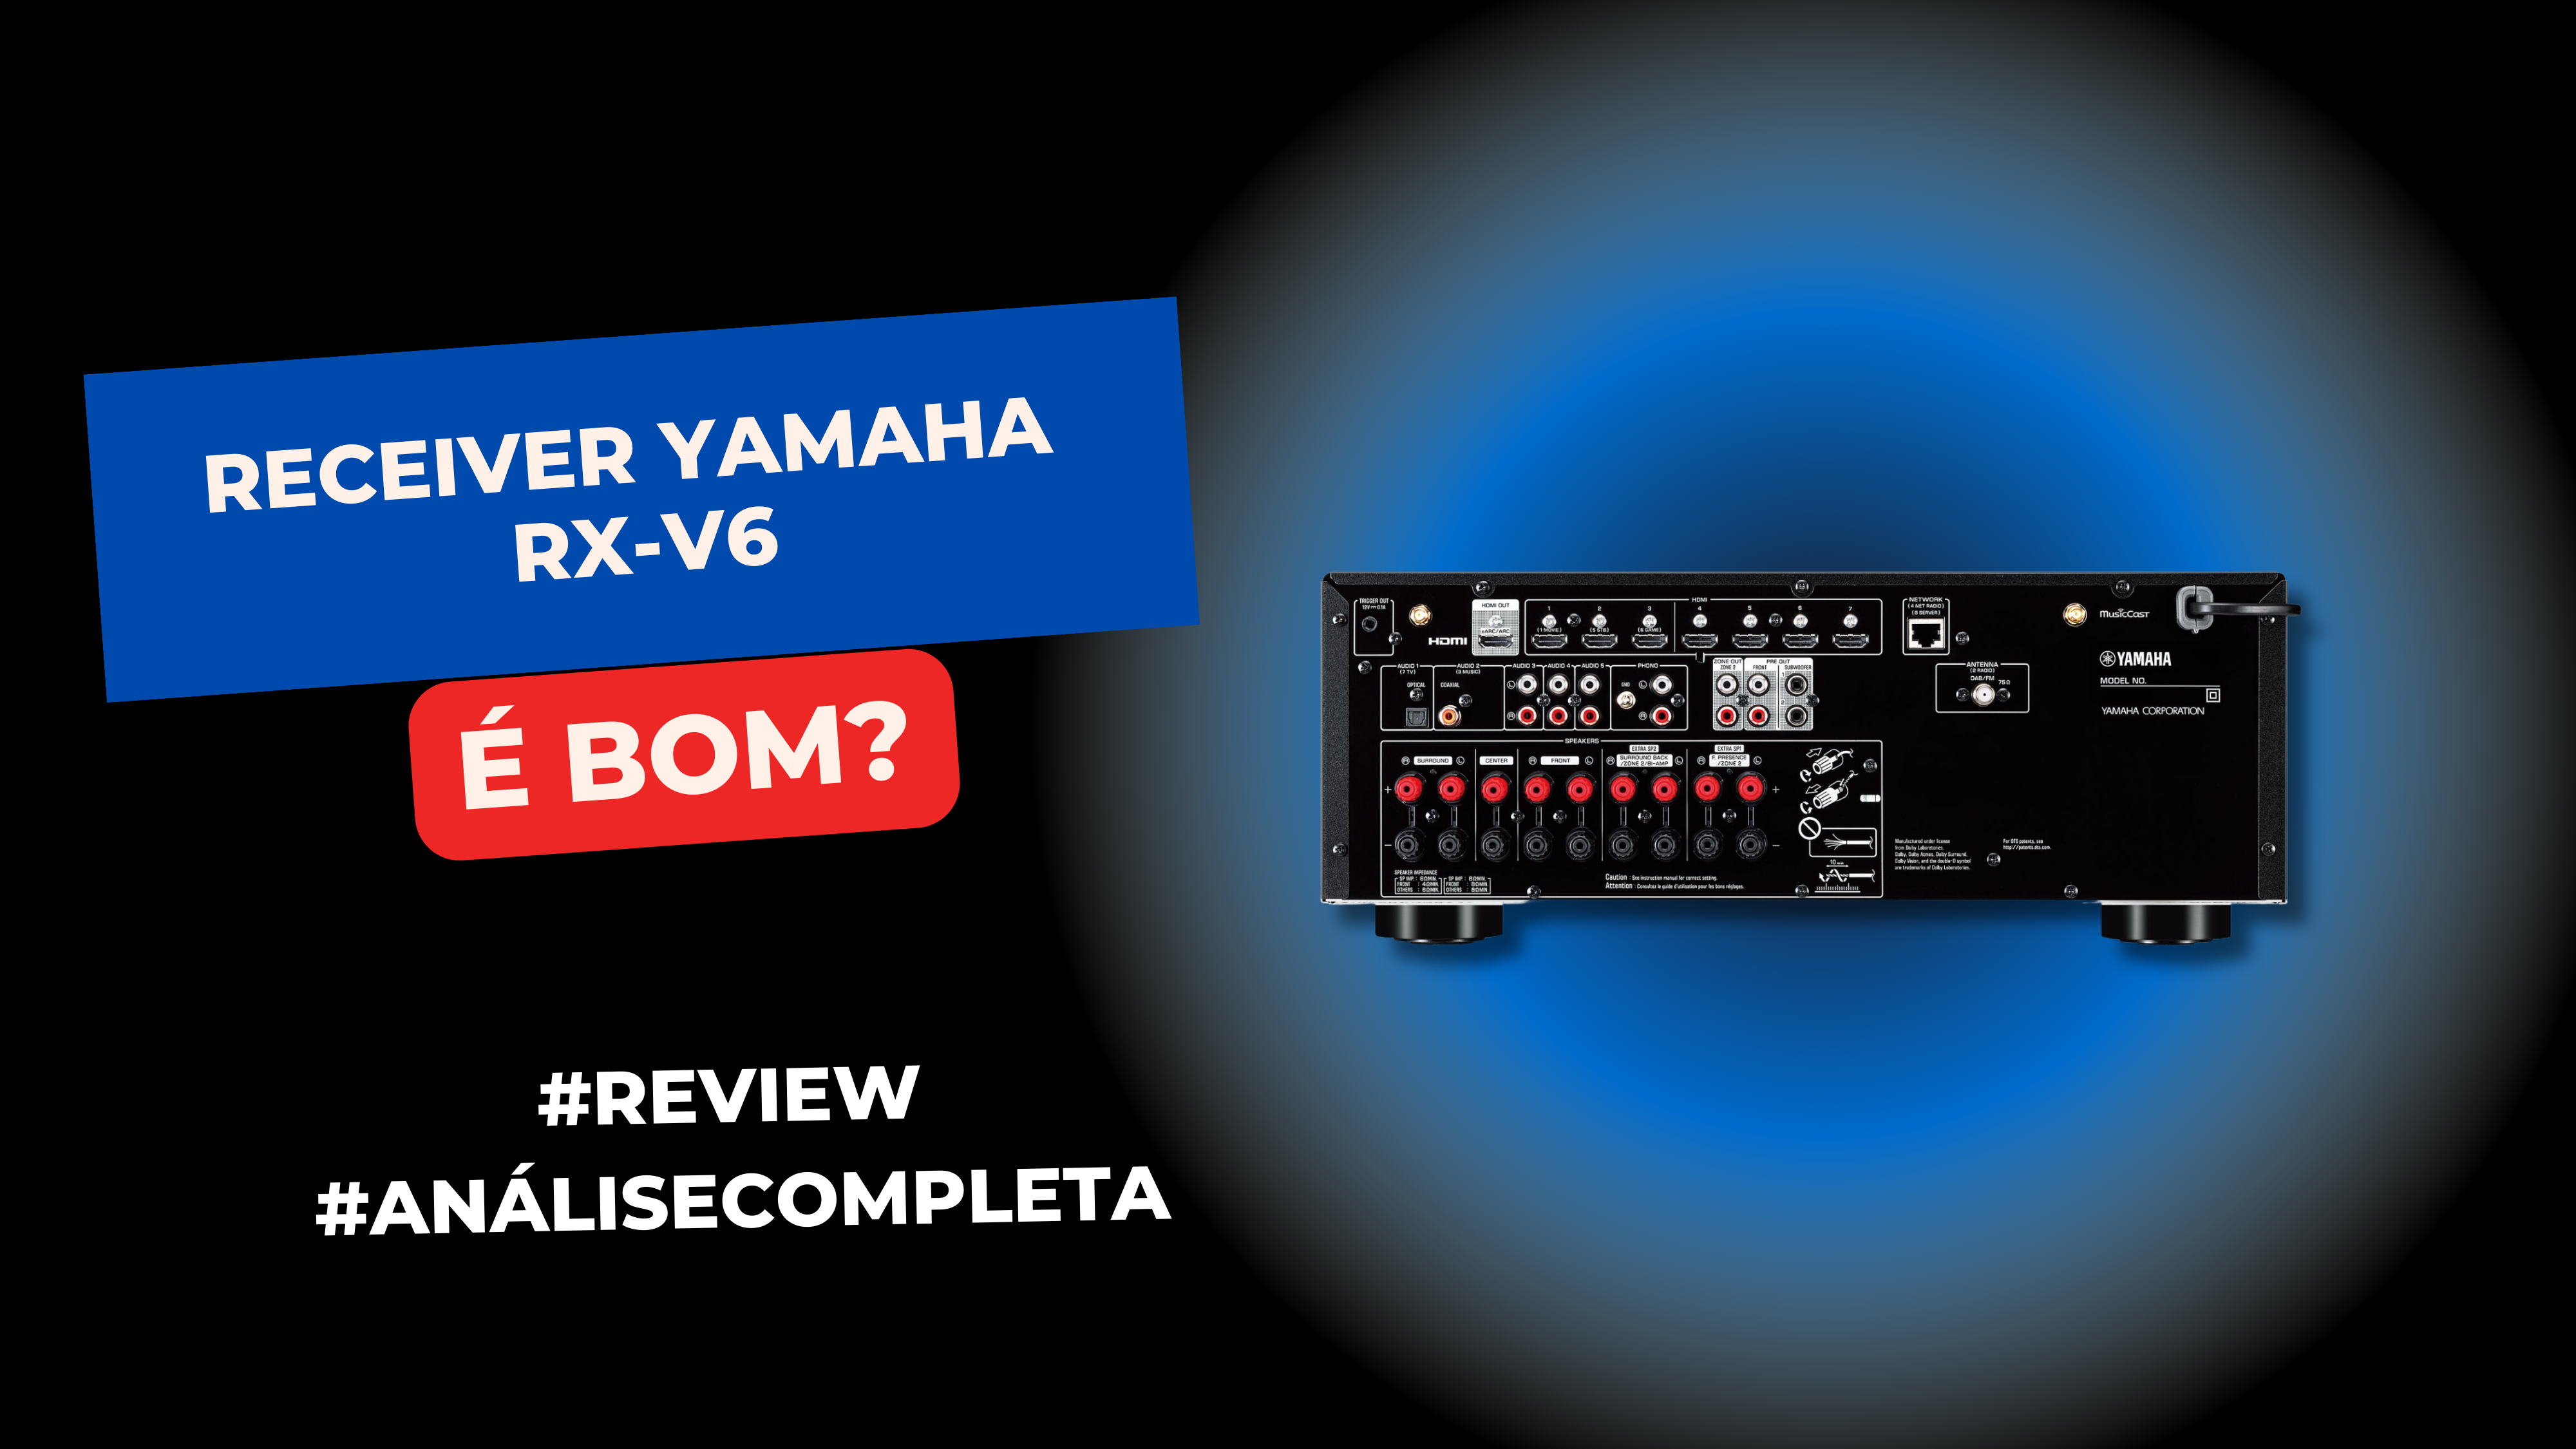 Receiver Yamaha RX-V6A